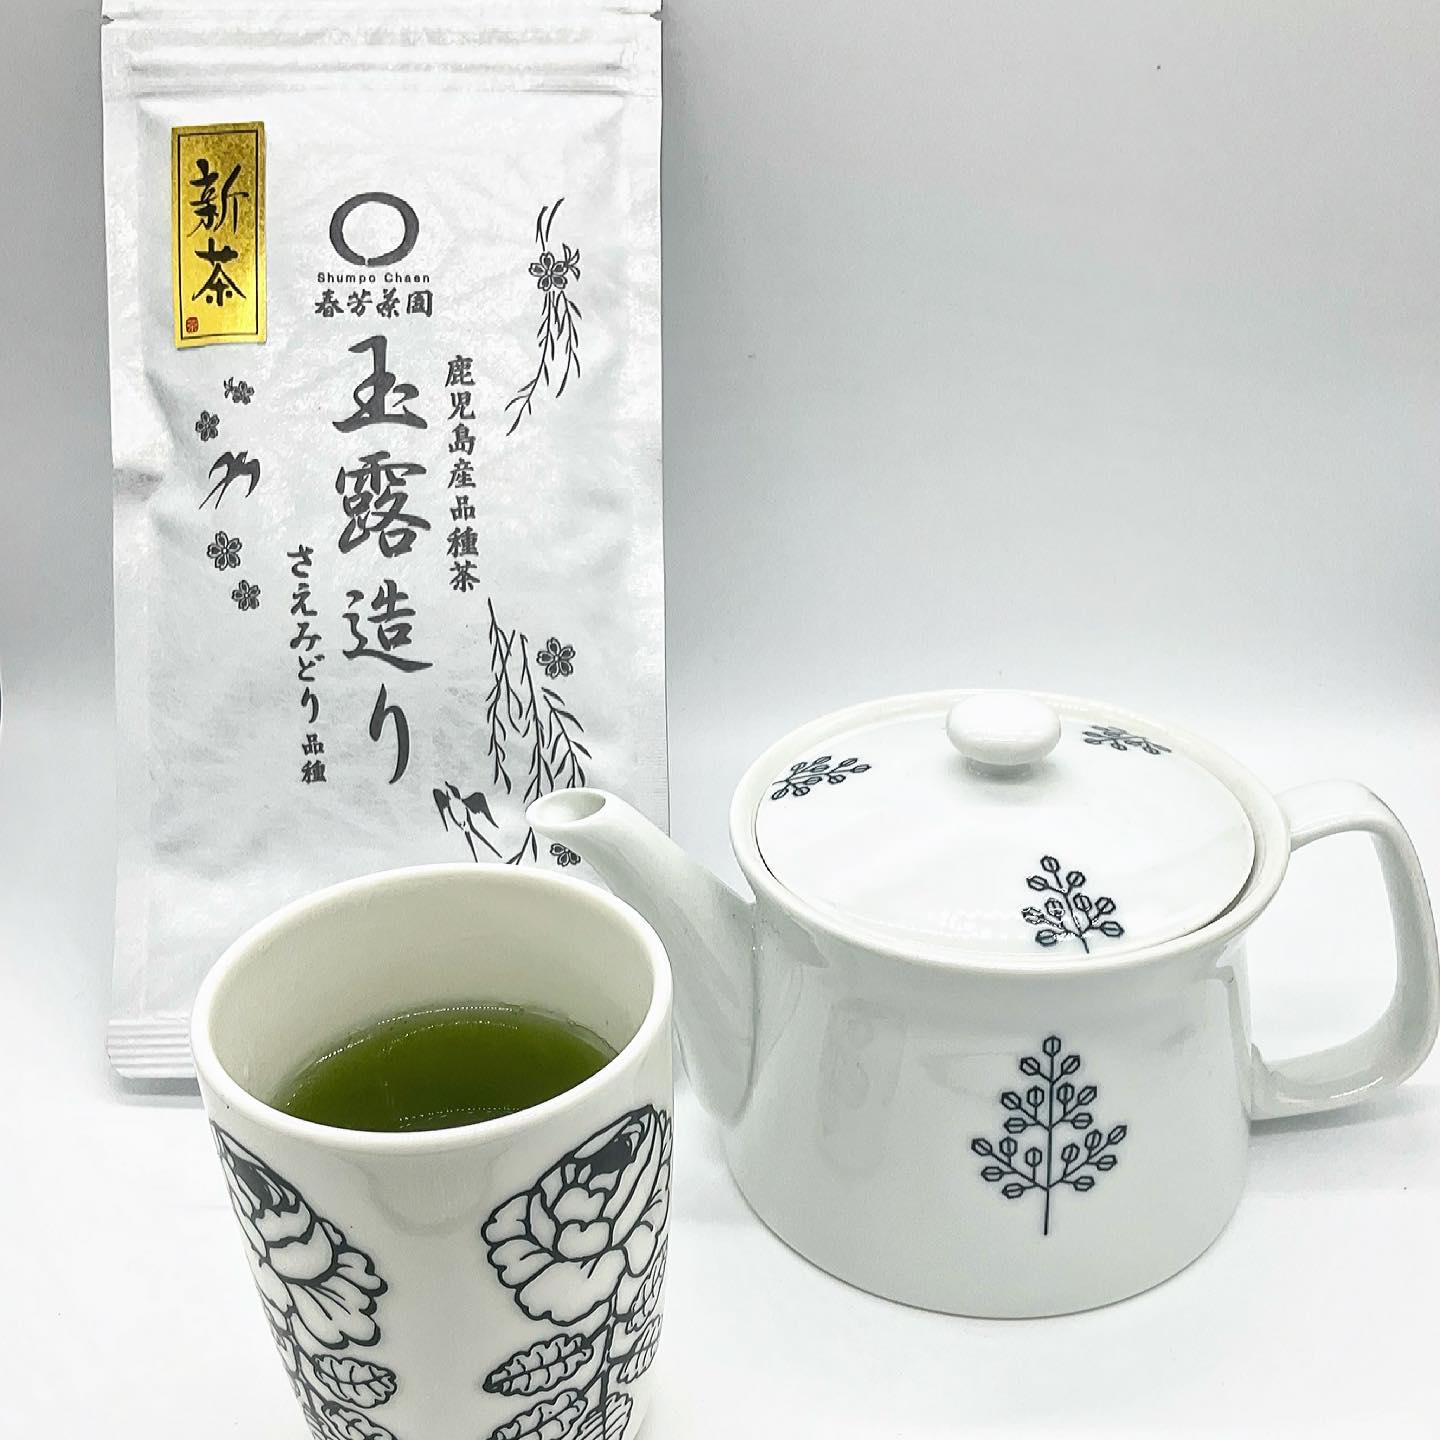 おうち時間に癒しを求めて…️ゆっくりとお茶を入れて、心と体が安らぐひとときを過ごしませんか️急須でお茶を入れるだけで、お家で本格的な日本茶カフェ気分️🫖お気に入りのカップに、今が旬の新茶を入れておうち時間楽しみましょう